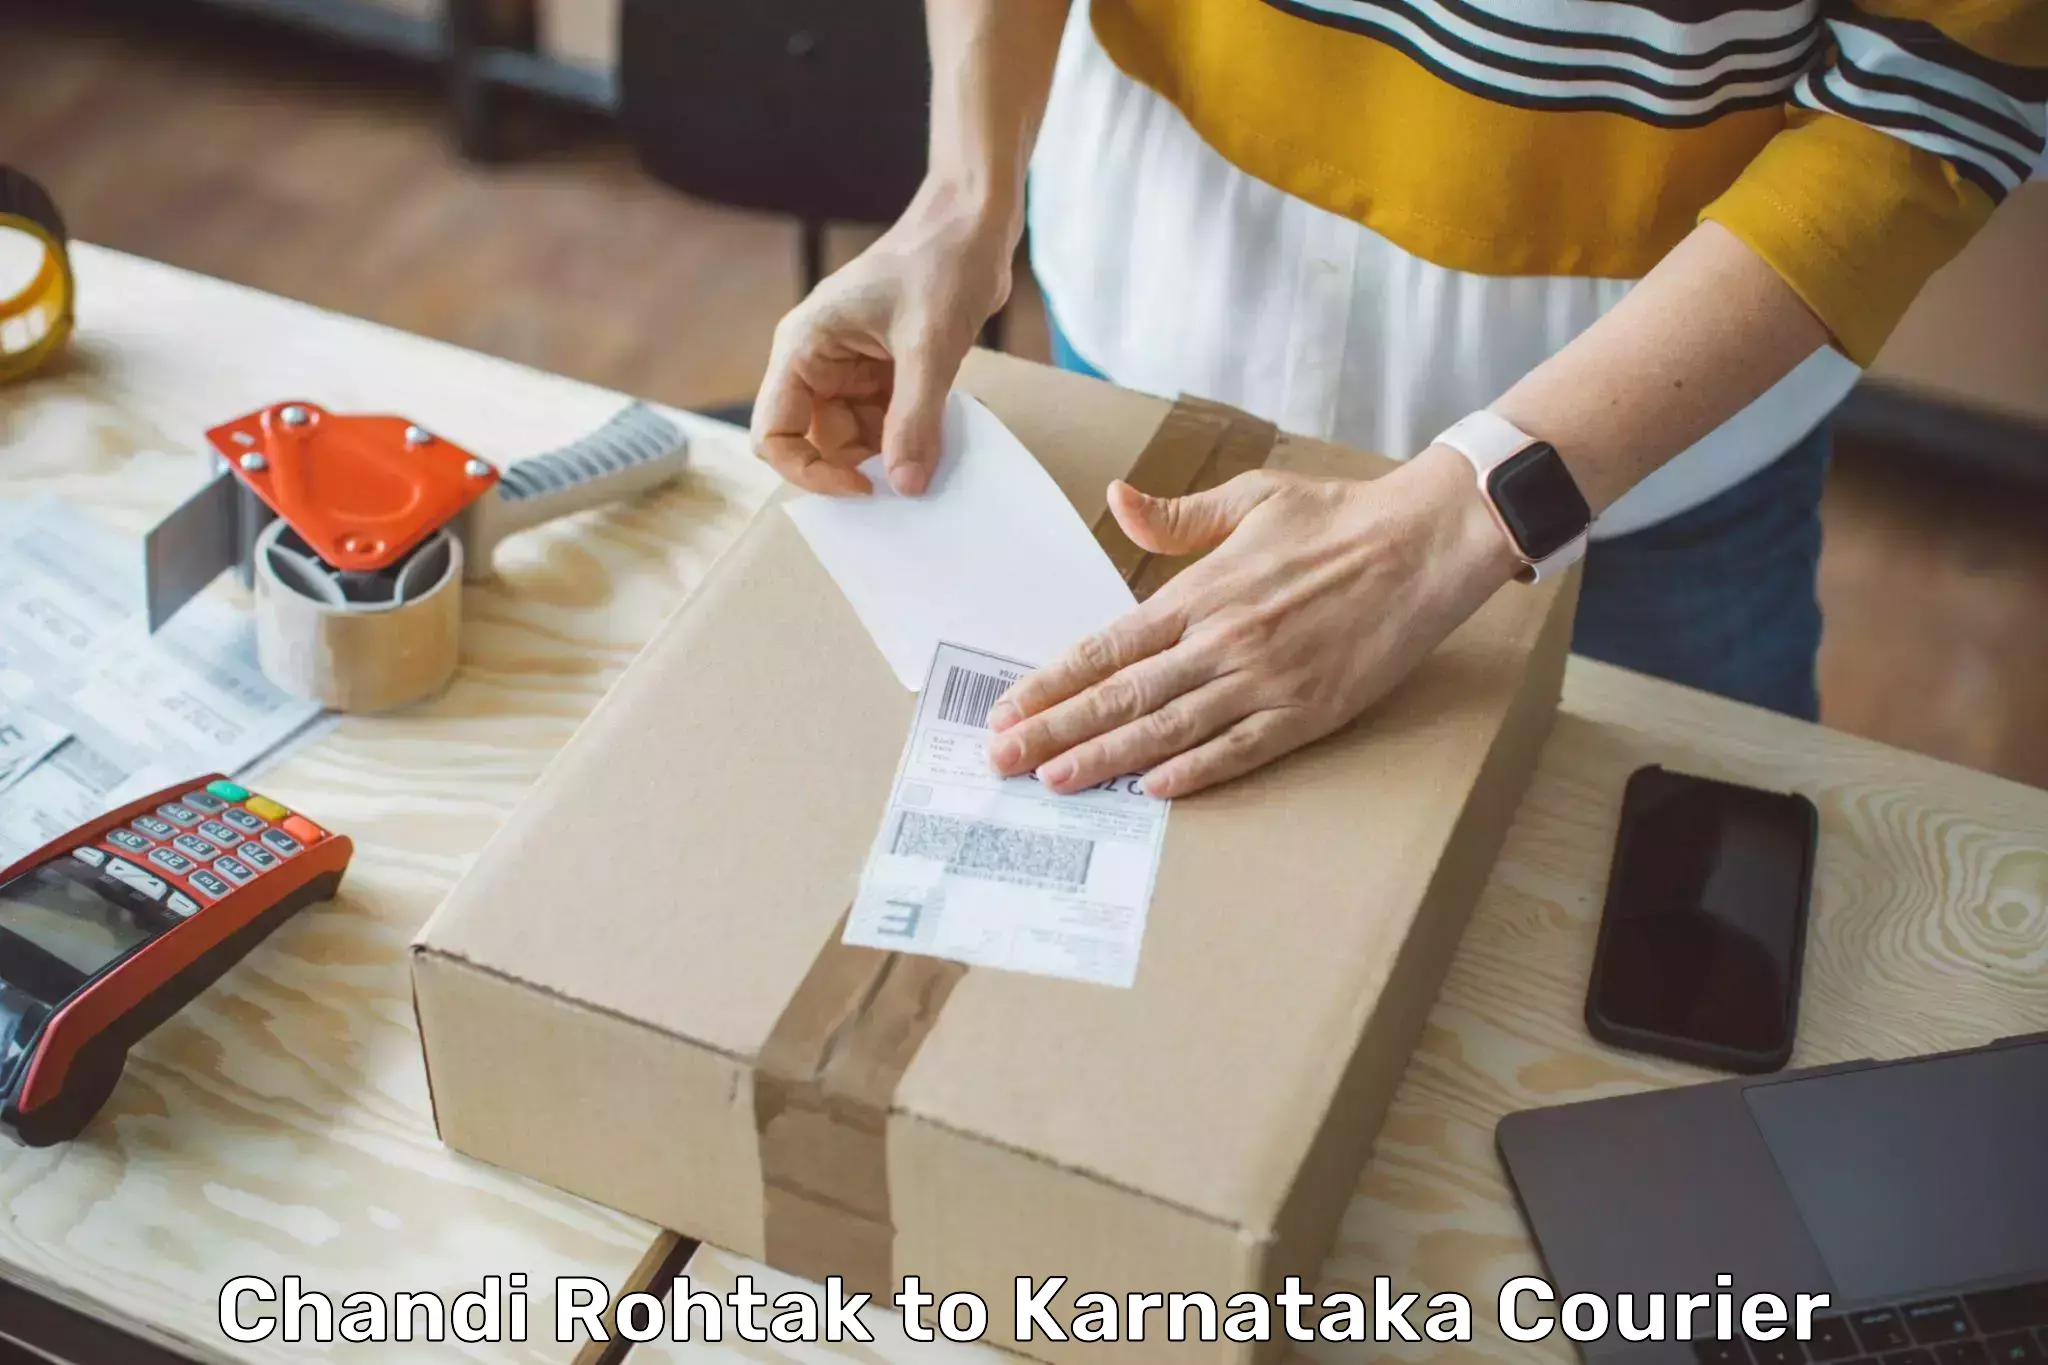 Nationwide delivery network Chandi Rohtak to Karnataka